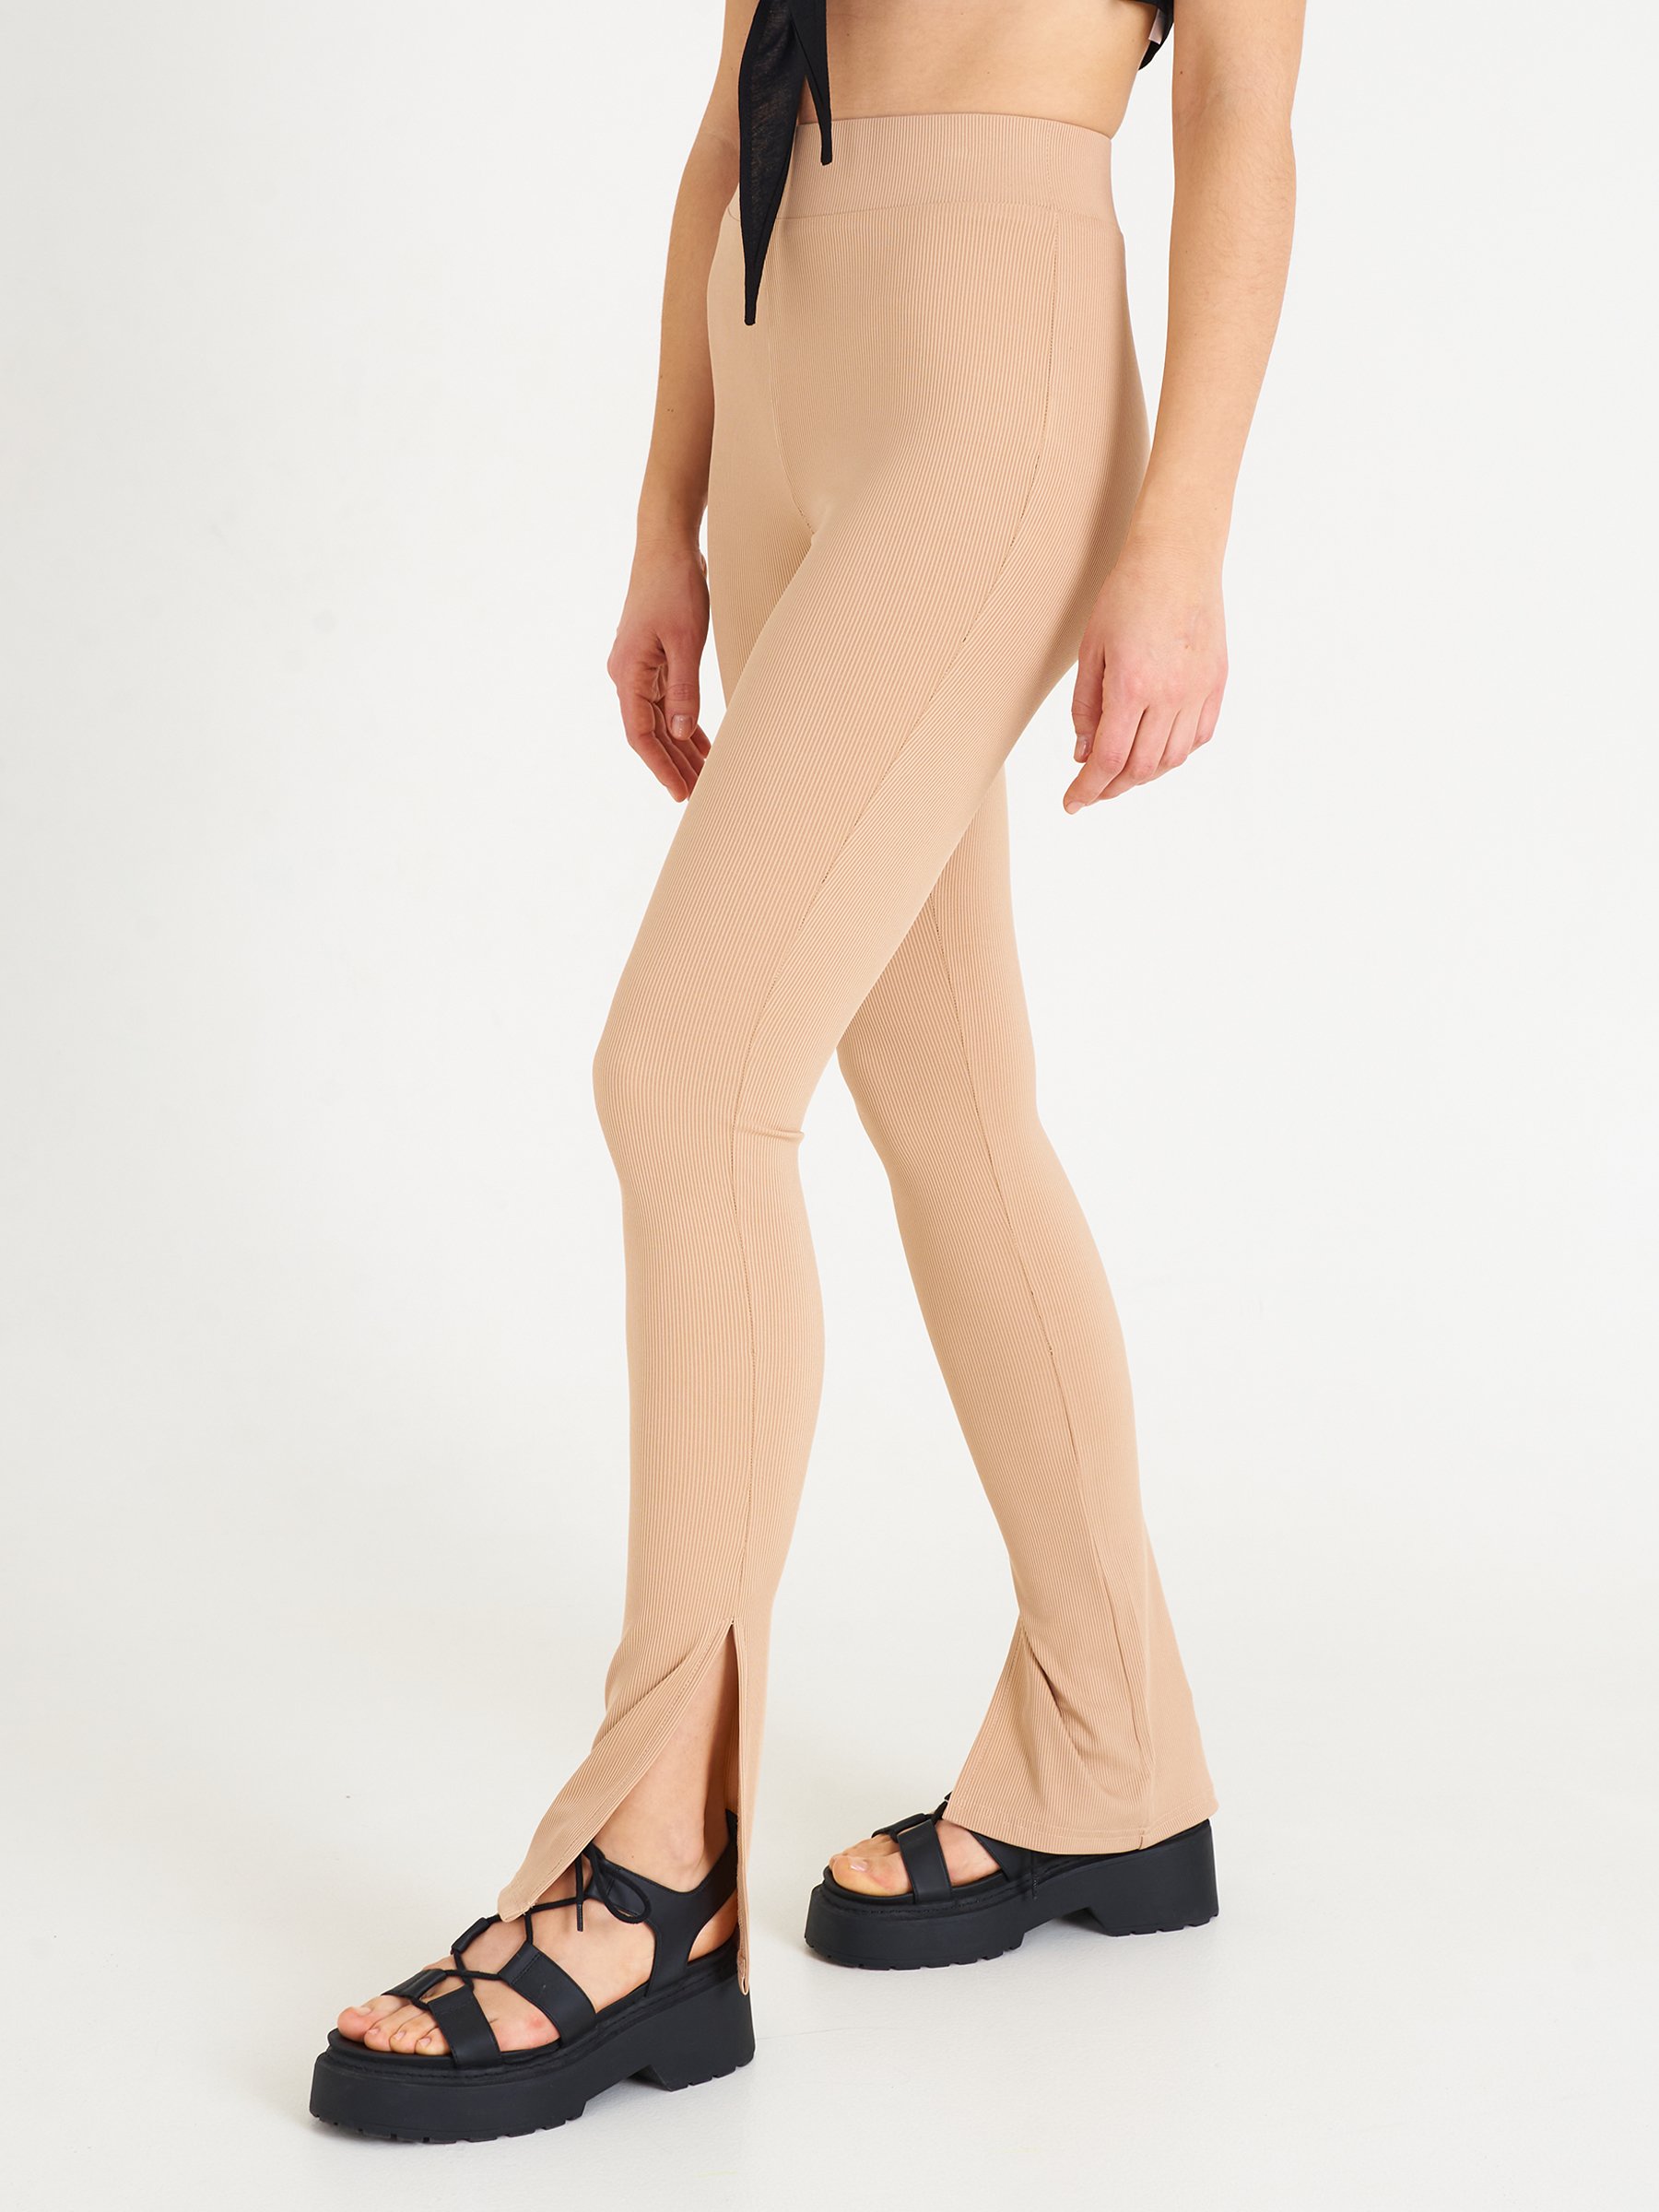 Basic Khaki Leggings - Leggings - PrettylittleThing  Outfits with leggings,  Womens printed leggings, Khaki leggings